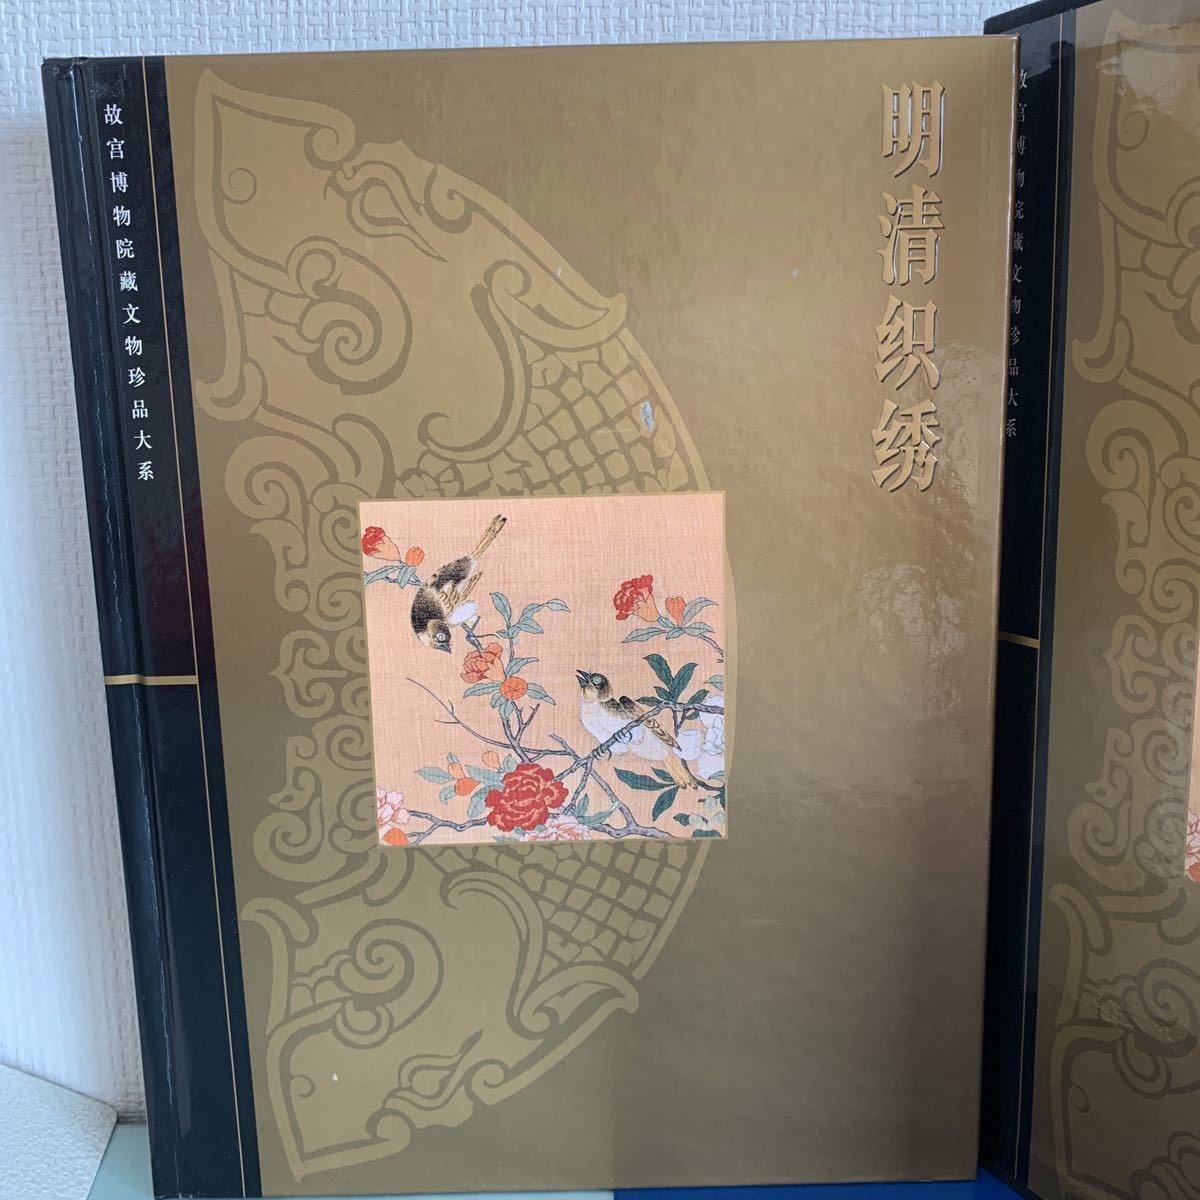 明清織繍（中国語・英語） 宗鳳英主編 故博物院藏文物珍品大系 2005.9 Textiles and embroideries of the Ming and Qing dynasties